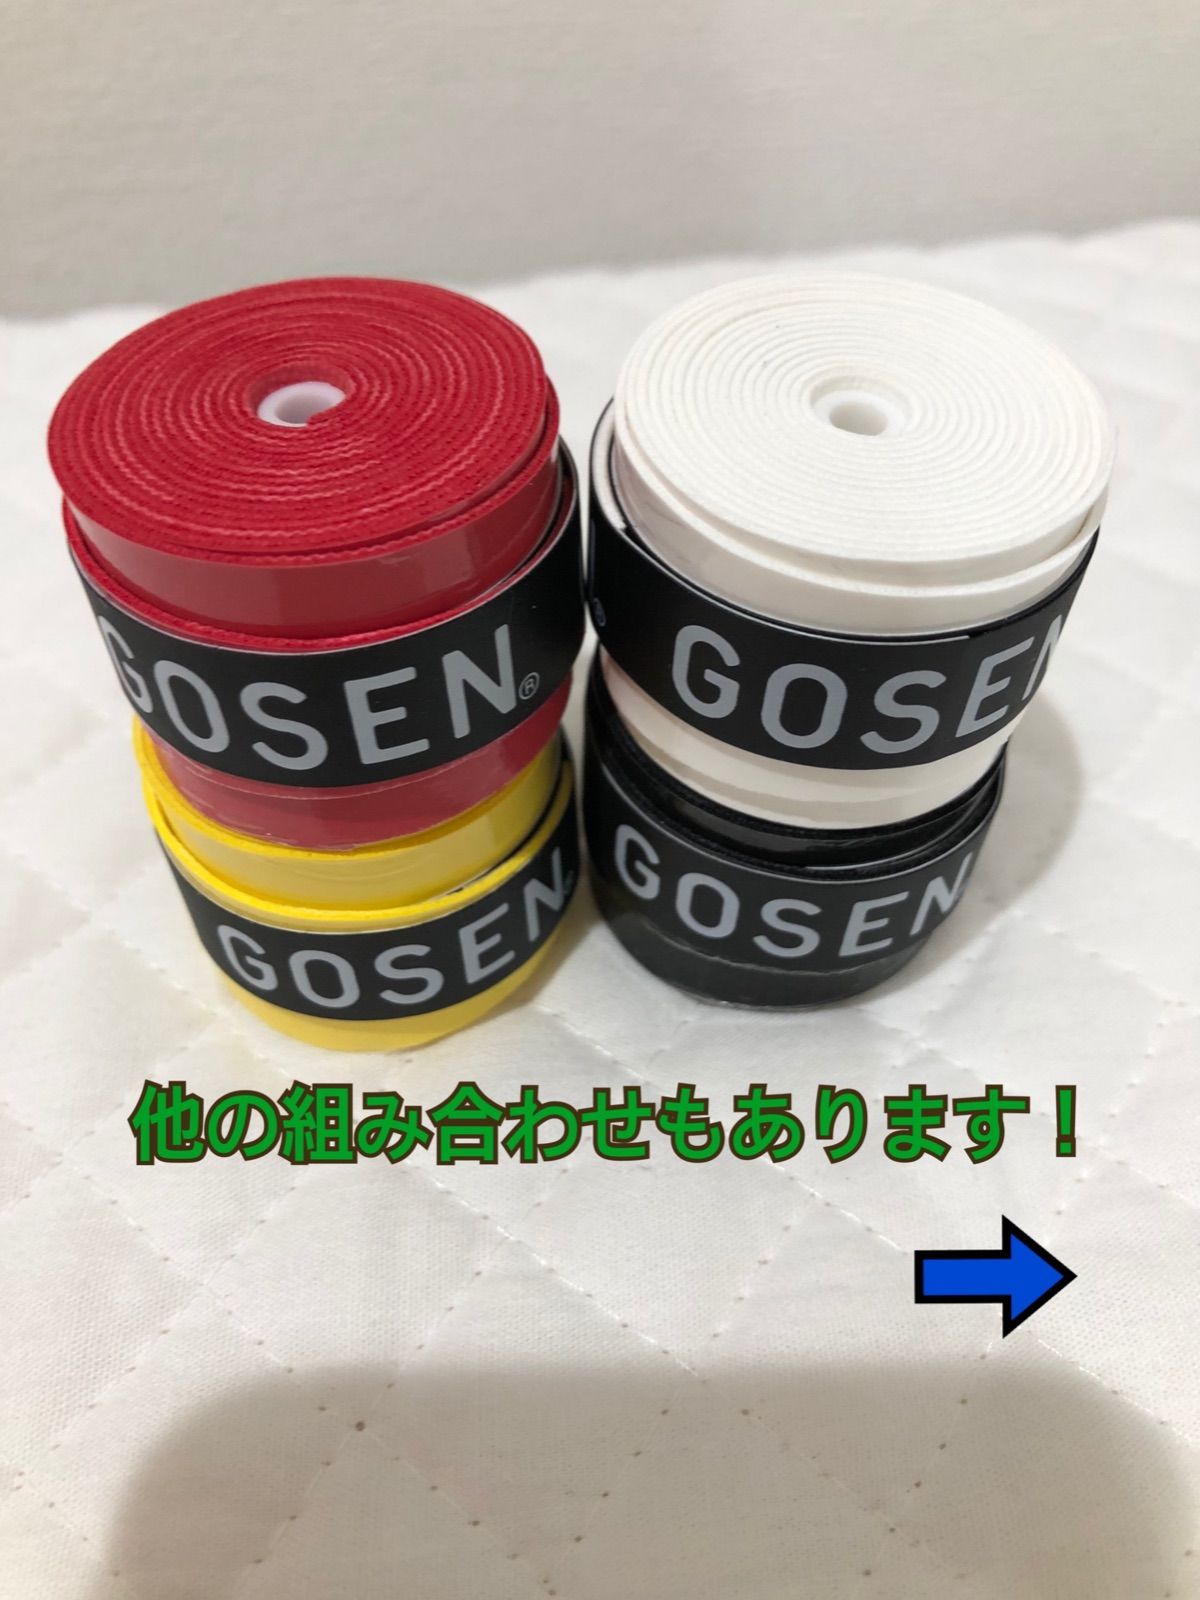 【ネコポス】GOSEN グリップテープ 4個 赤 黄色 青 白 黒 ゴーセン